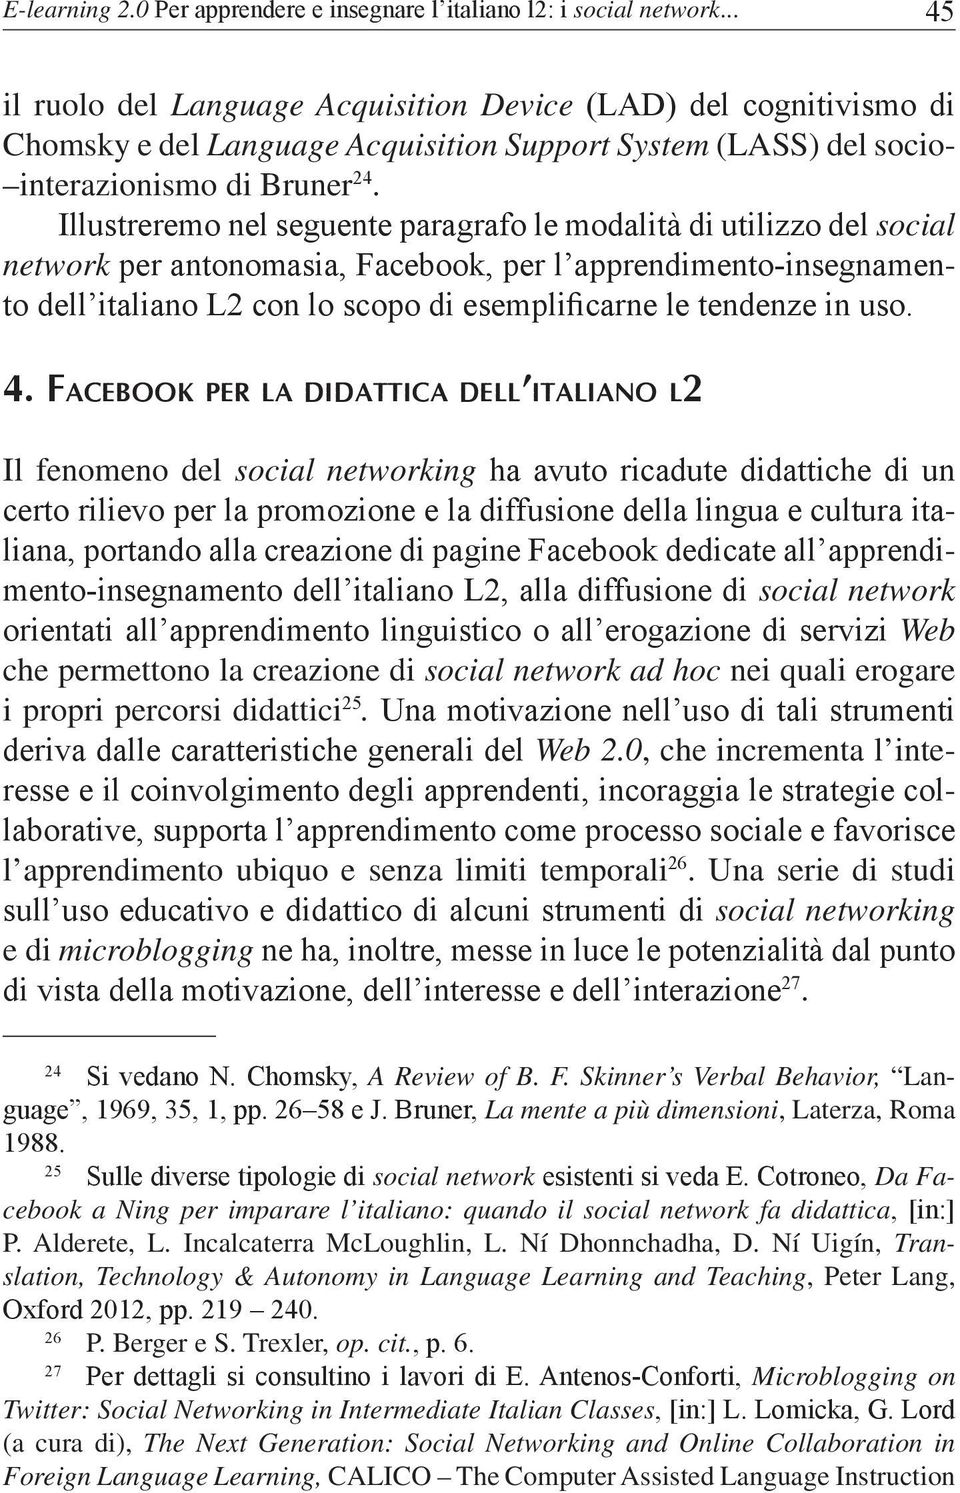 Illustreremo nel seguente paragrafo le modalità di utilizzo del social network per antonomasia, Facebook, per l apprendimento-insegnamento dell italiano L2 con lo scopo di esemplificarne le tendenze